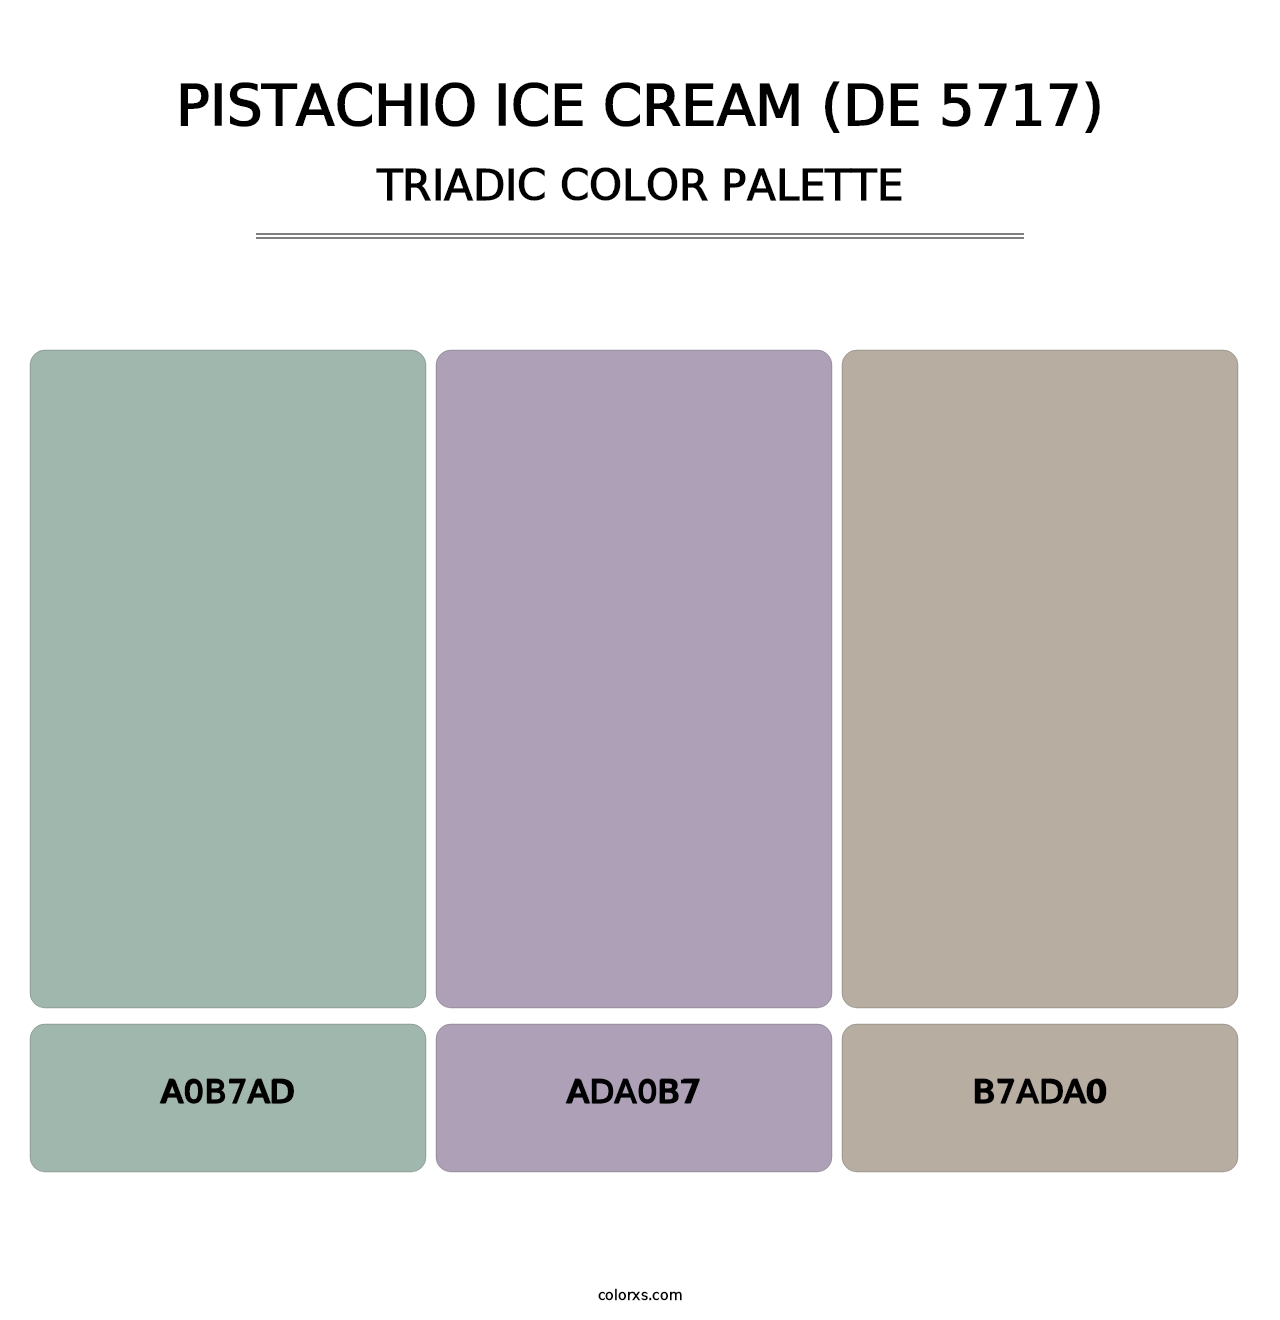 Pistachio Ice Cream (DE 5717) - Triadic Color Palette